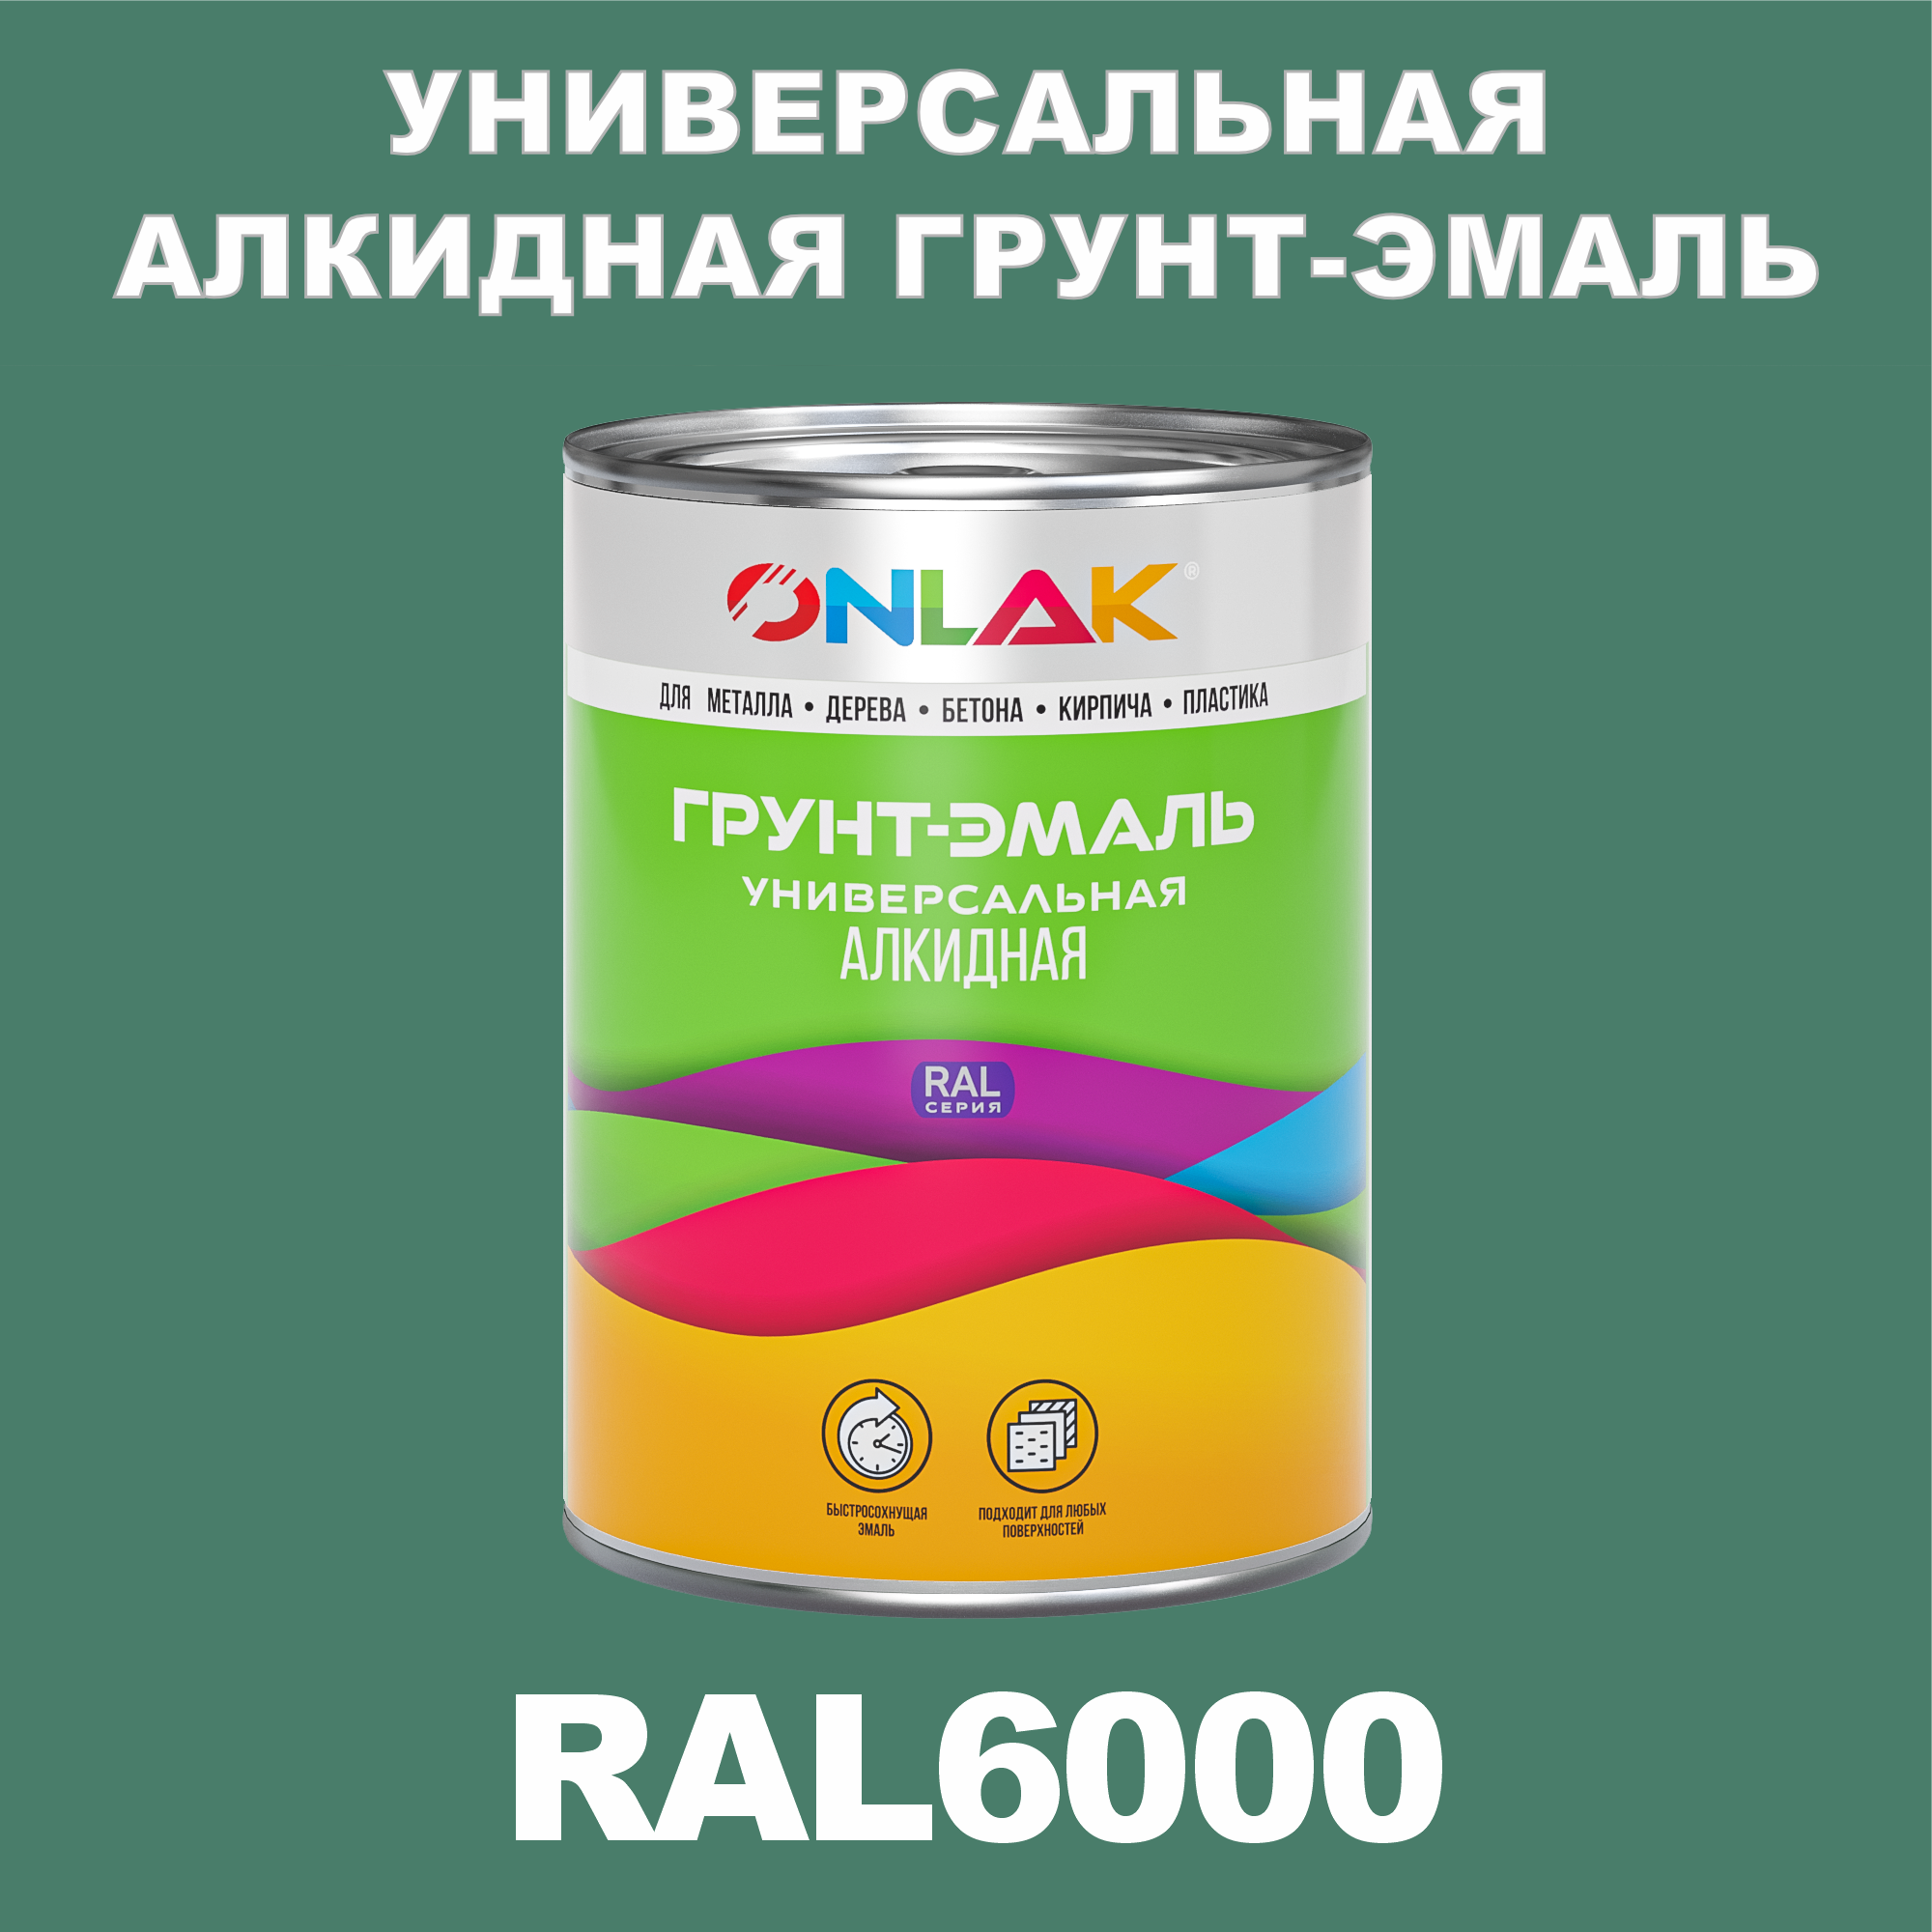 Грунт-эмаль ONLAK 1К RAL6000 антикоррозионная алкидная по металлу по ржавчине 1 кг грунт эмаль skladno по ржавчине алкидная желтая 1 8 кг